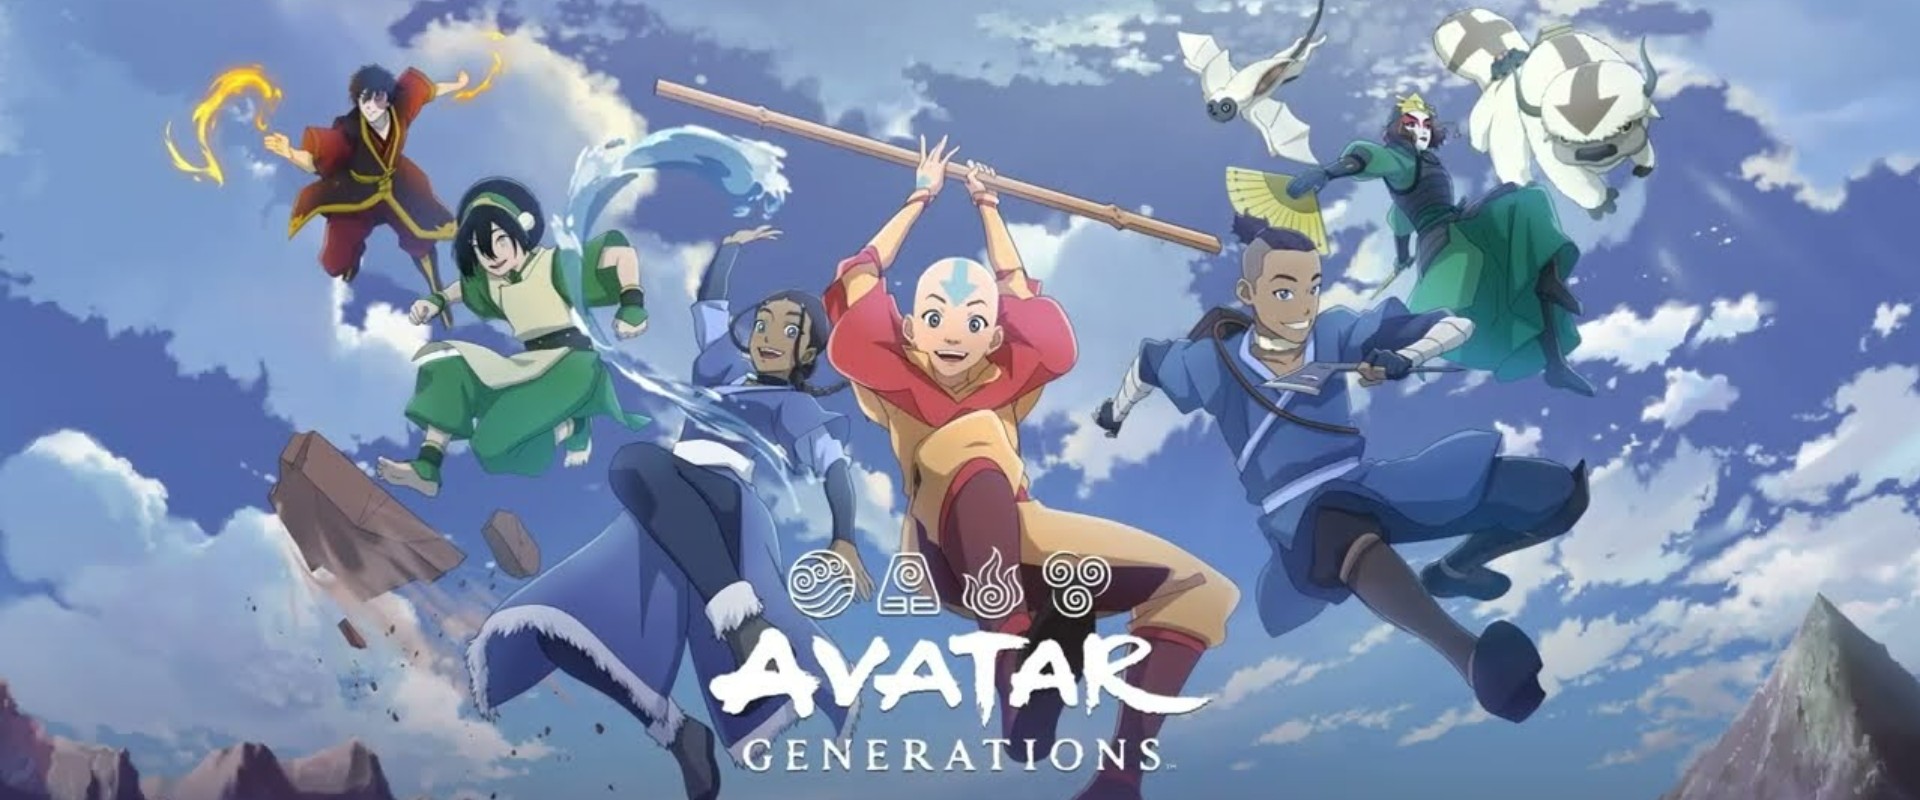 ดาวน์โหลดและเล่น Avatar Generations บน PC ด้วย NoxPlayer โปรแกรมจำลองฟรี